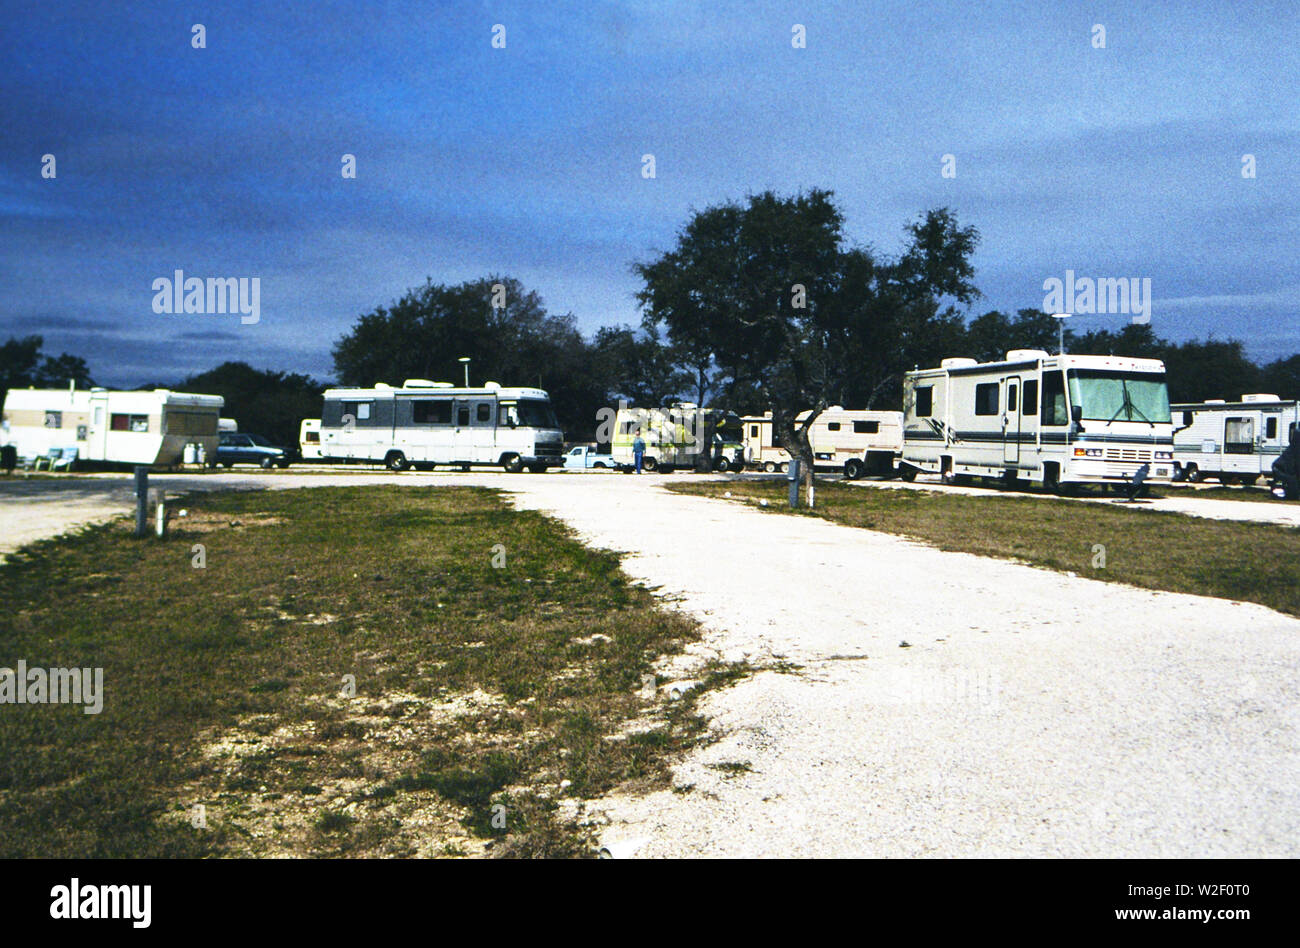 Ein trailer park für RV (Recreational Vehicles) Ca. 1995 Stockfoto